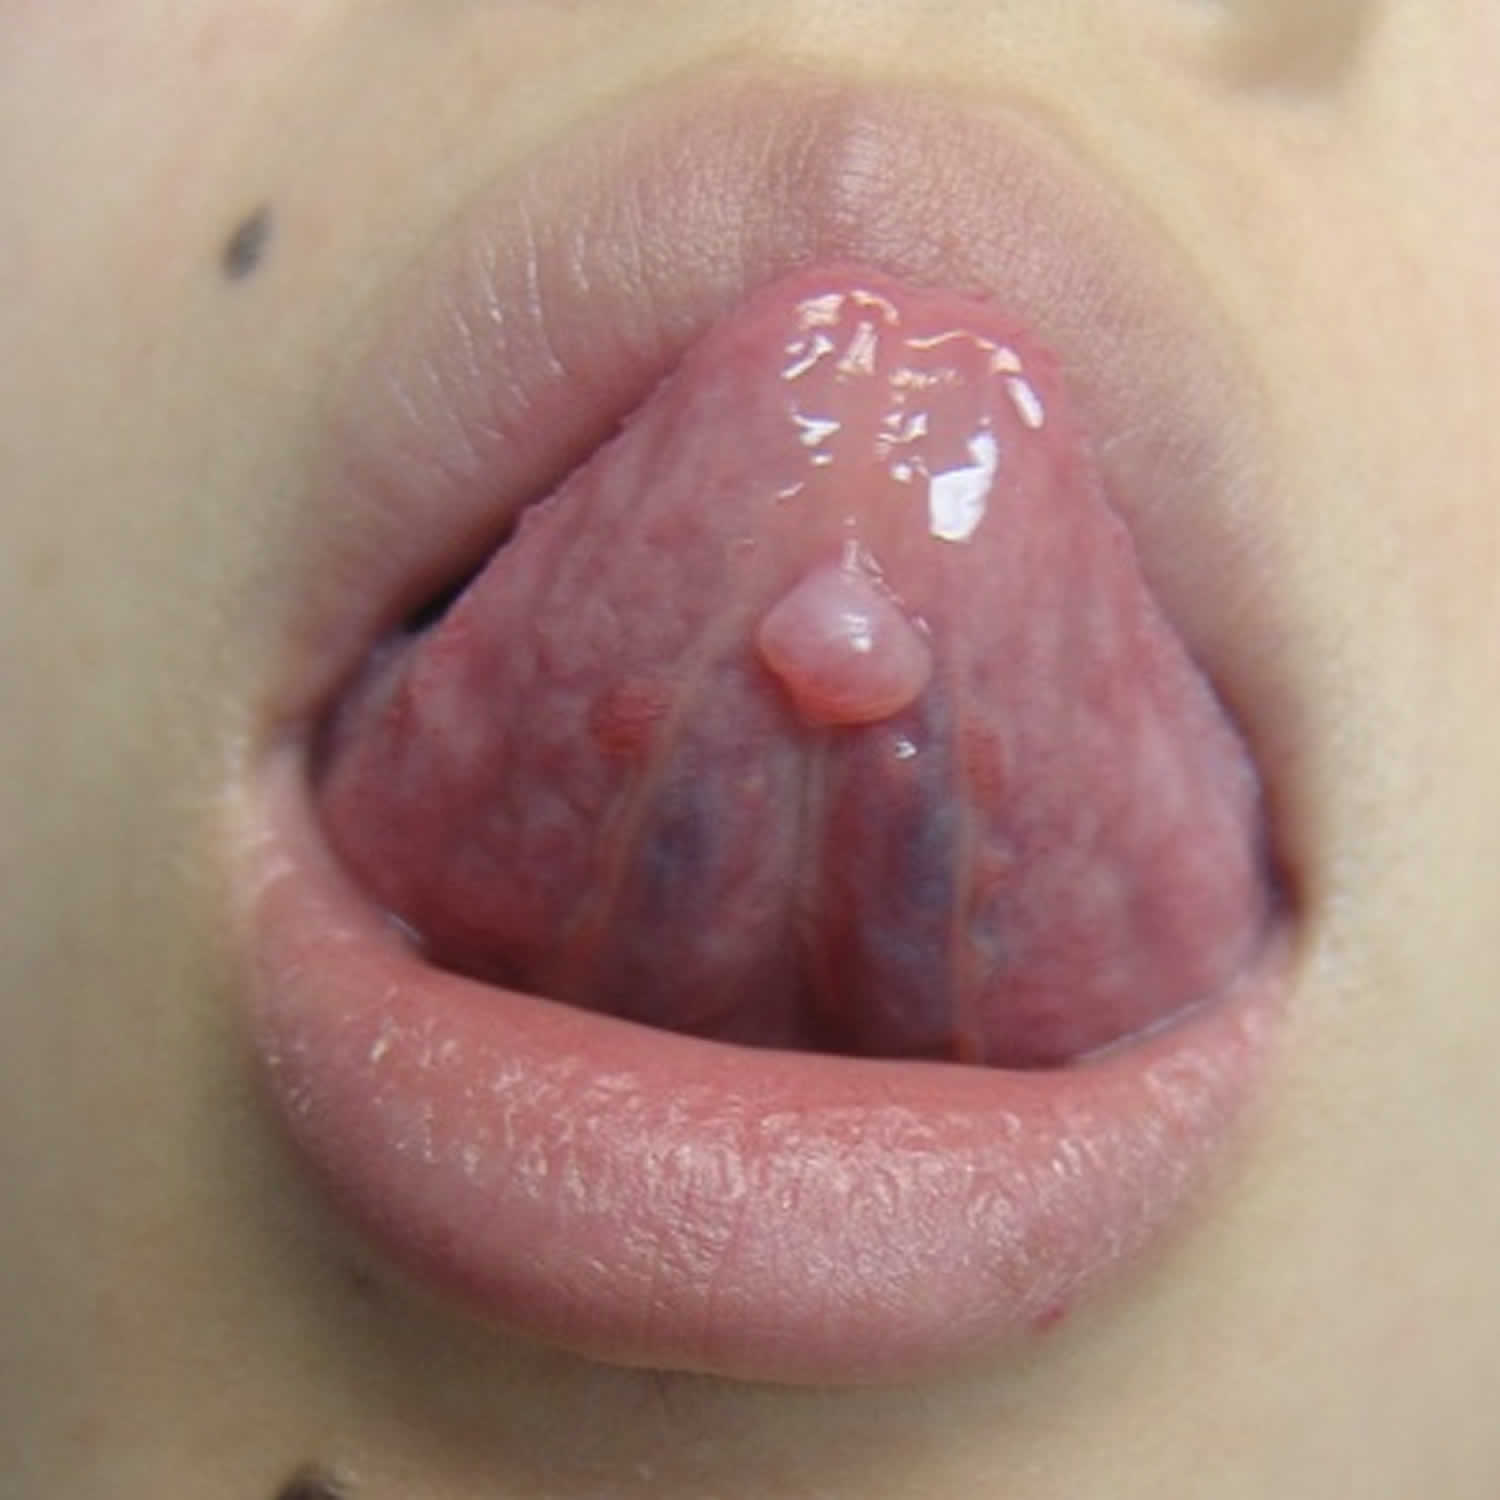 mucocele under tongue.